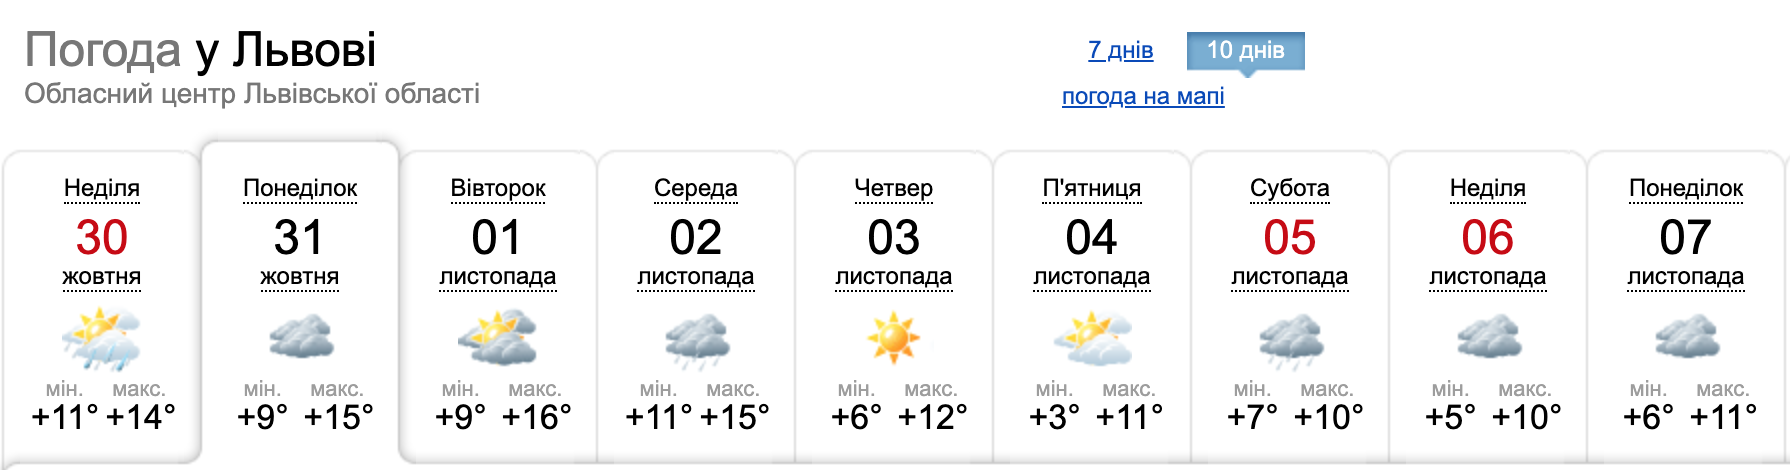 Погода в Львове